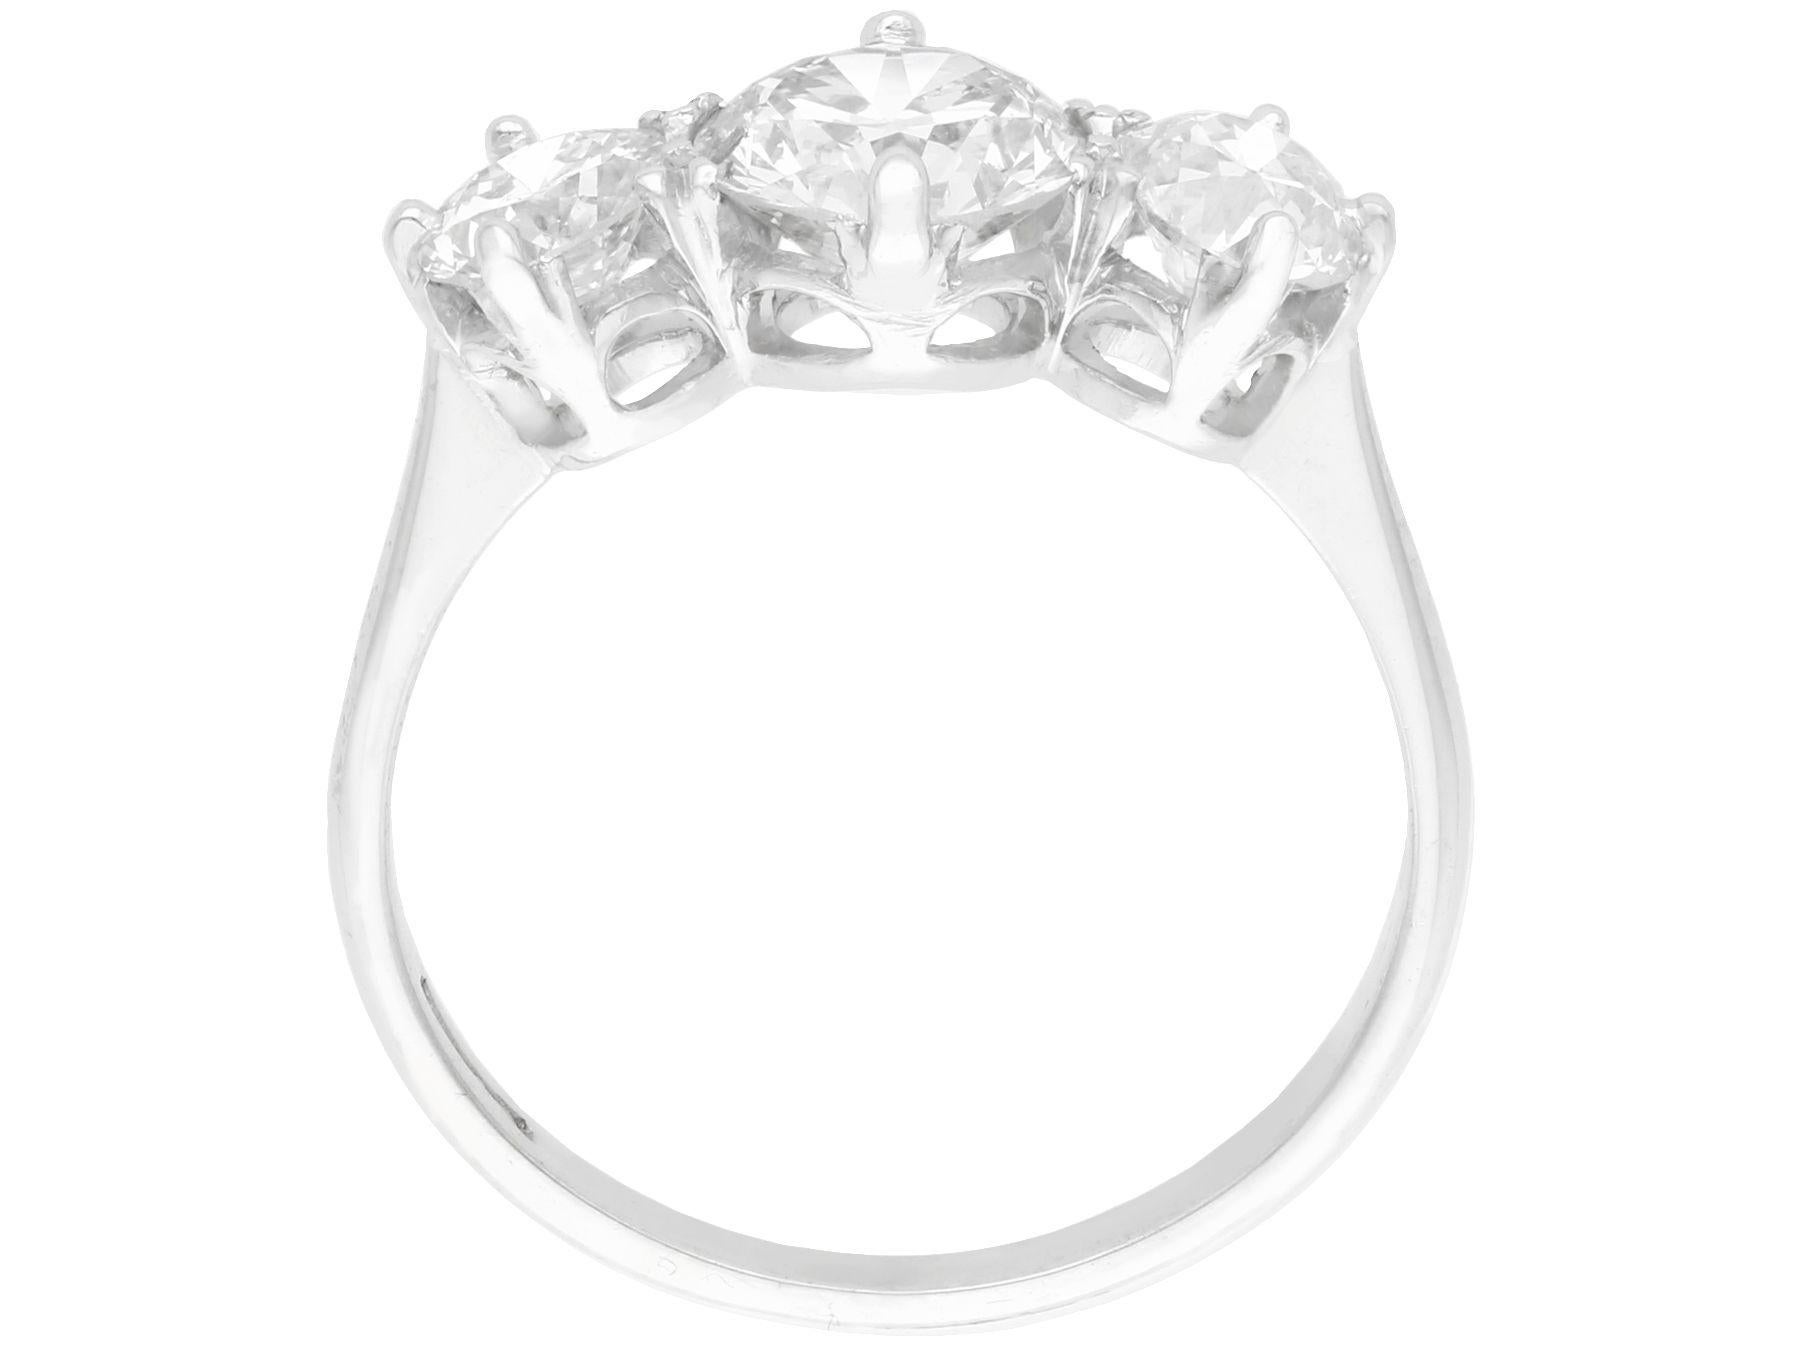 trilogy diamond ring 2 carat